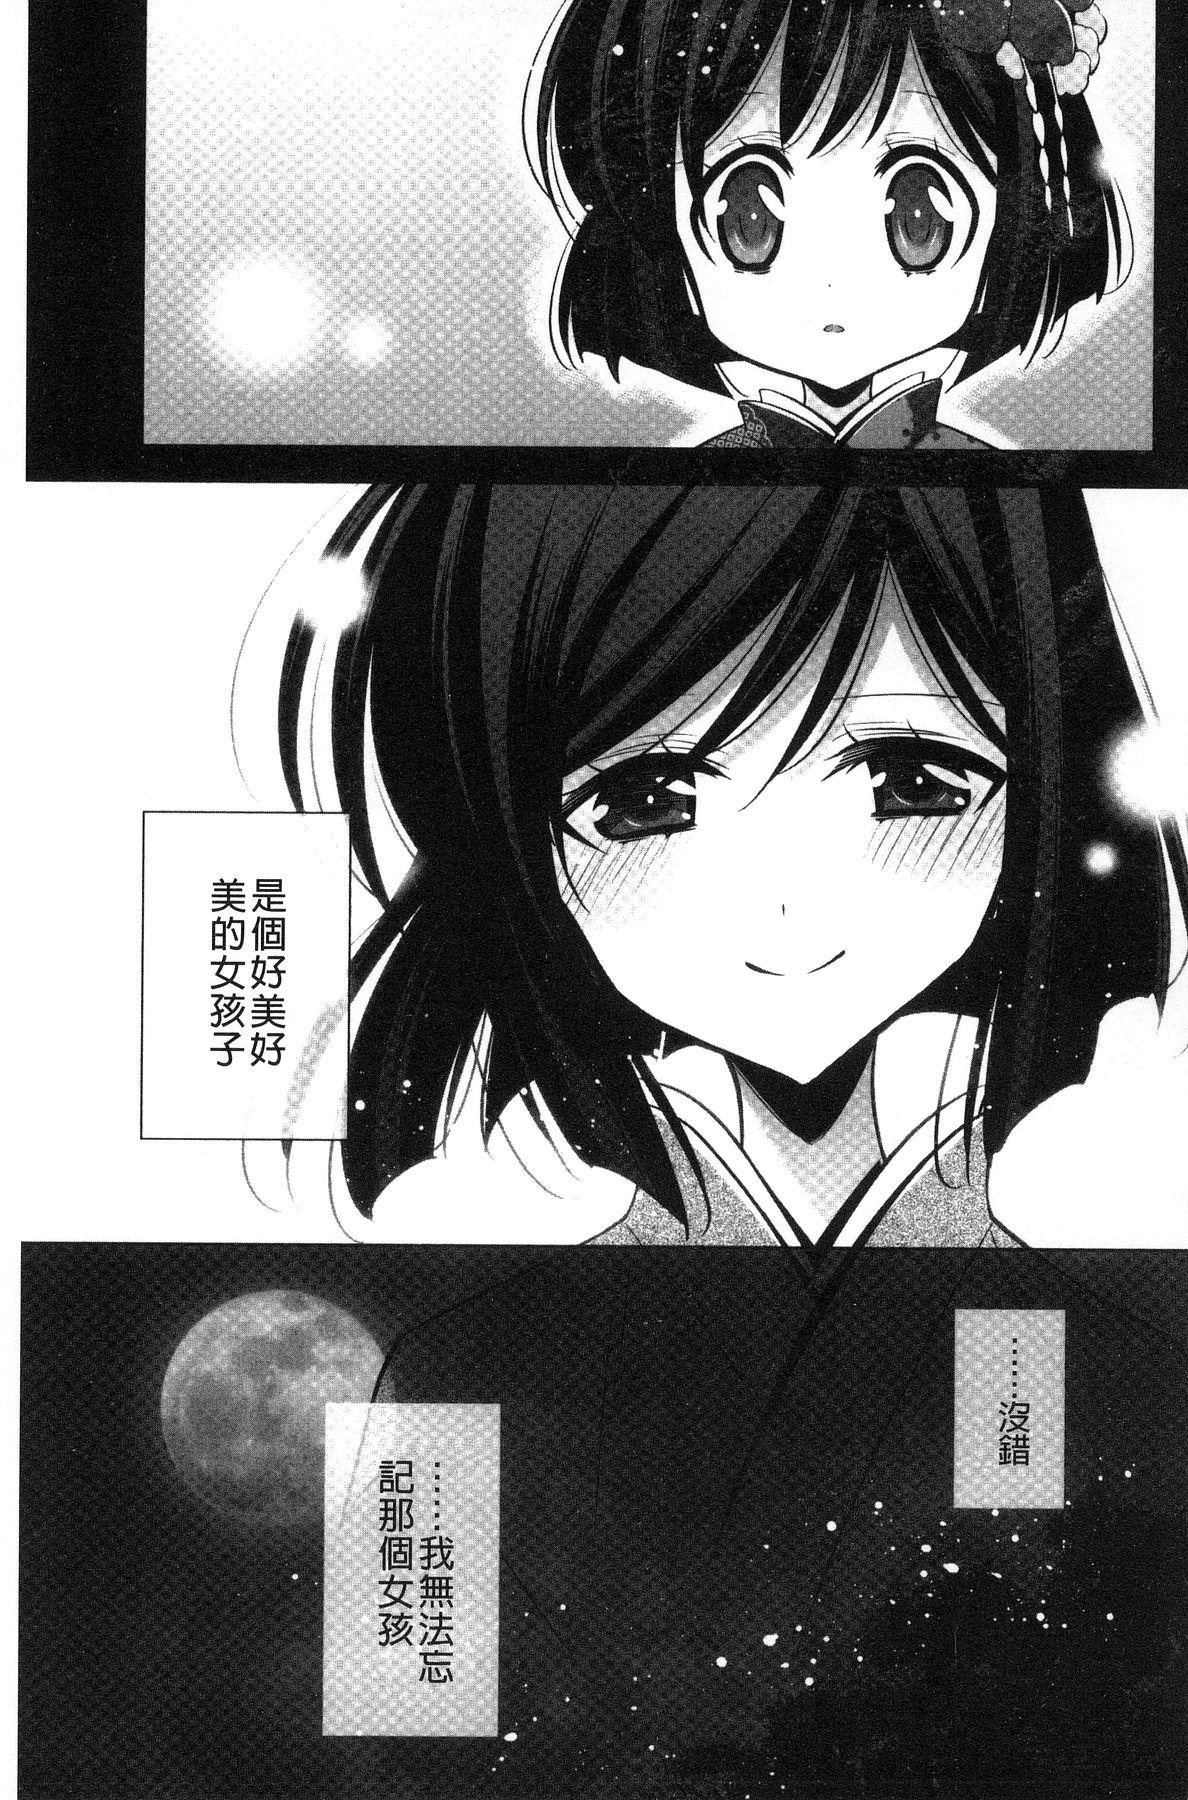 Kanojo to Watashi no Himitsu no Koi - She falls in love with her 178